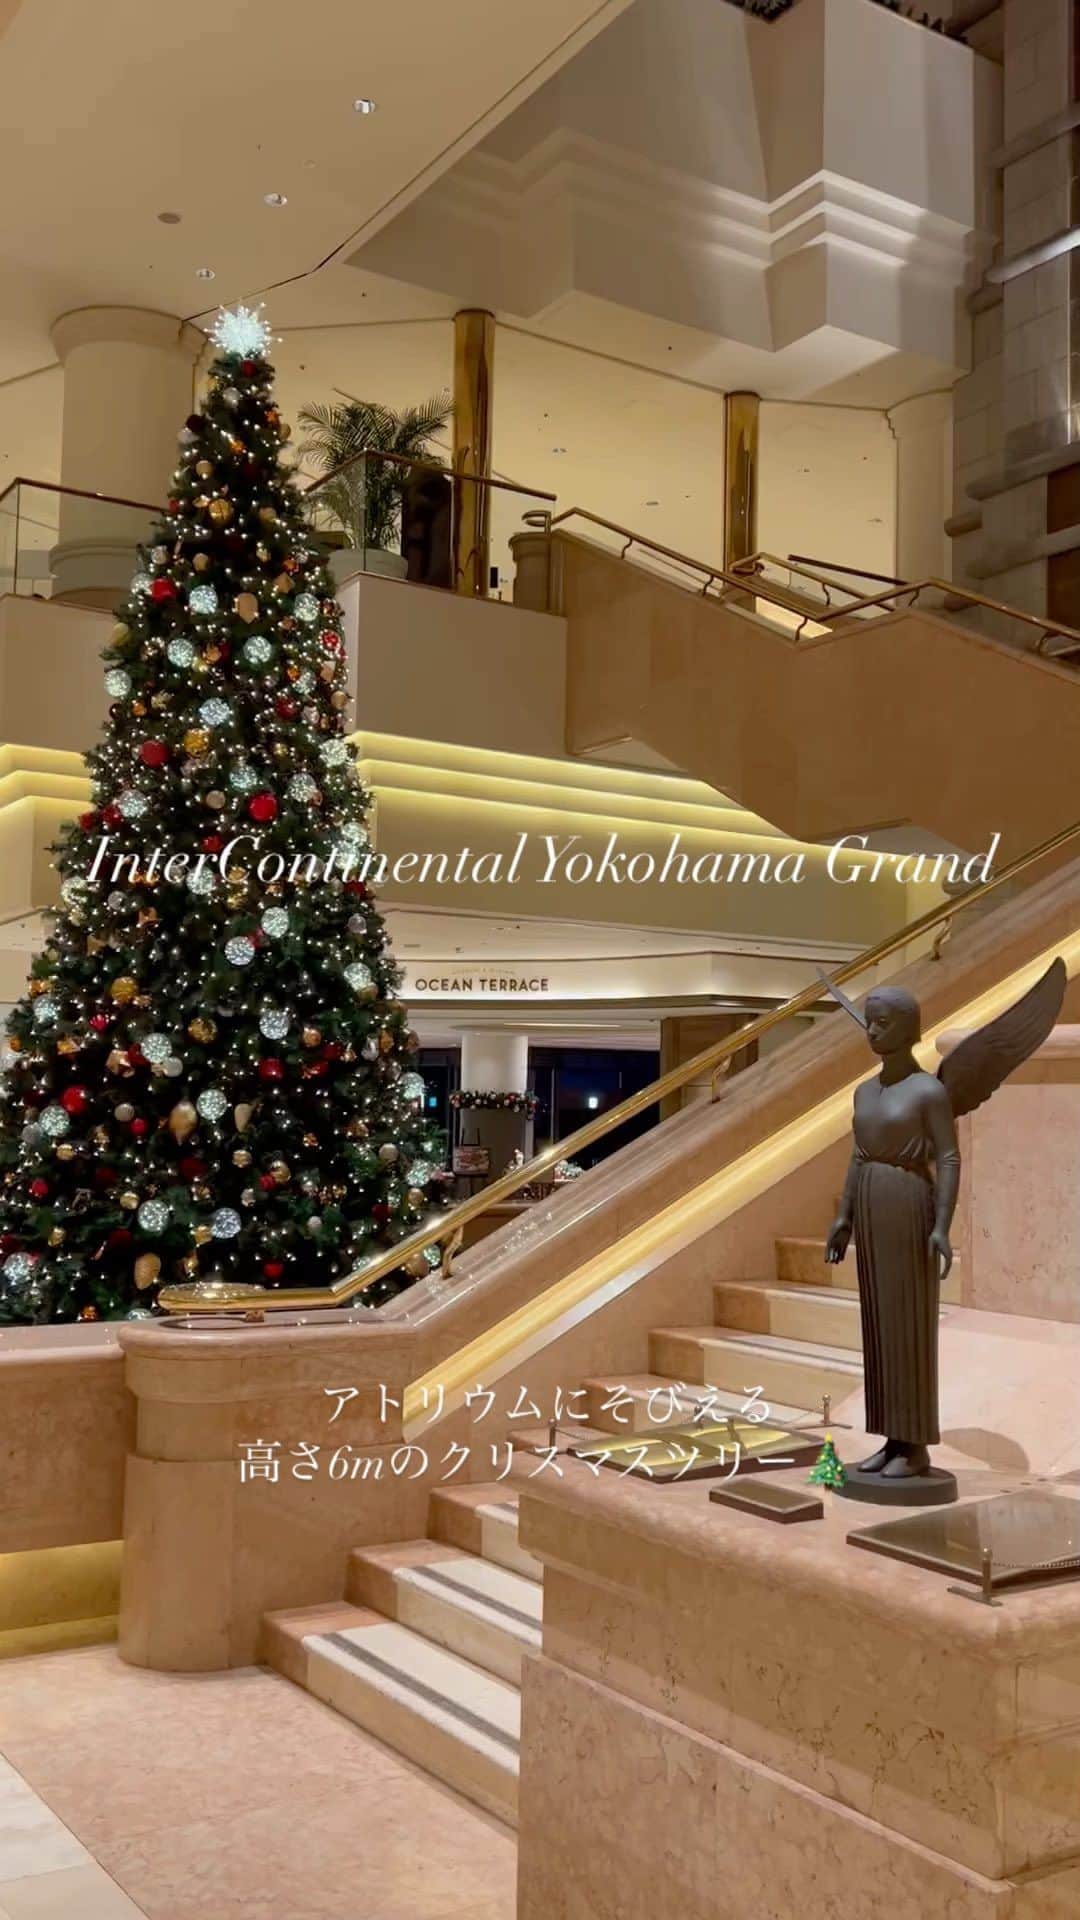 ヨコハマ グランド インターコンチネンタル ホテルのインスタグラム：「【12月7日は クリスマスツリーの日🎄】 クリスマスツリーには、モミの木などの常緑樹が使用され、これらは「永遠の象徴」とされています。日本では、1886年12月7日、外国人船員のために横浜で初めてクリスマスツリーが飾られ、それを記念して #クリスマスツリーの日 となりました。 当ホテル一階の重厚感漂うアトリウムには、高さ6mのクラシカルなクリスマスツリーが飾られています。  #ヨコハマグランドインターコンチネンタルホテル#インターコンチネンタル横浜#横浜グランドインターコンチネンタルホテル#みなとみらい#横浜ホテル#クリスマス#クリスマス2023#ロビー装飾#クリスマス飾り#クリスマスツリー#🎄#クリスマスイルミネーション #intercontinentalyokohamagrand#minatomirai#christmastree#chrismas2023#xmas2023」